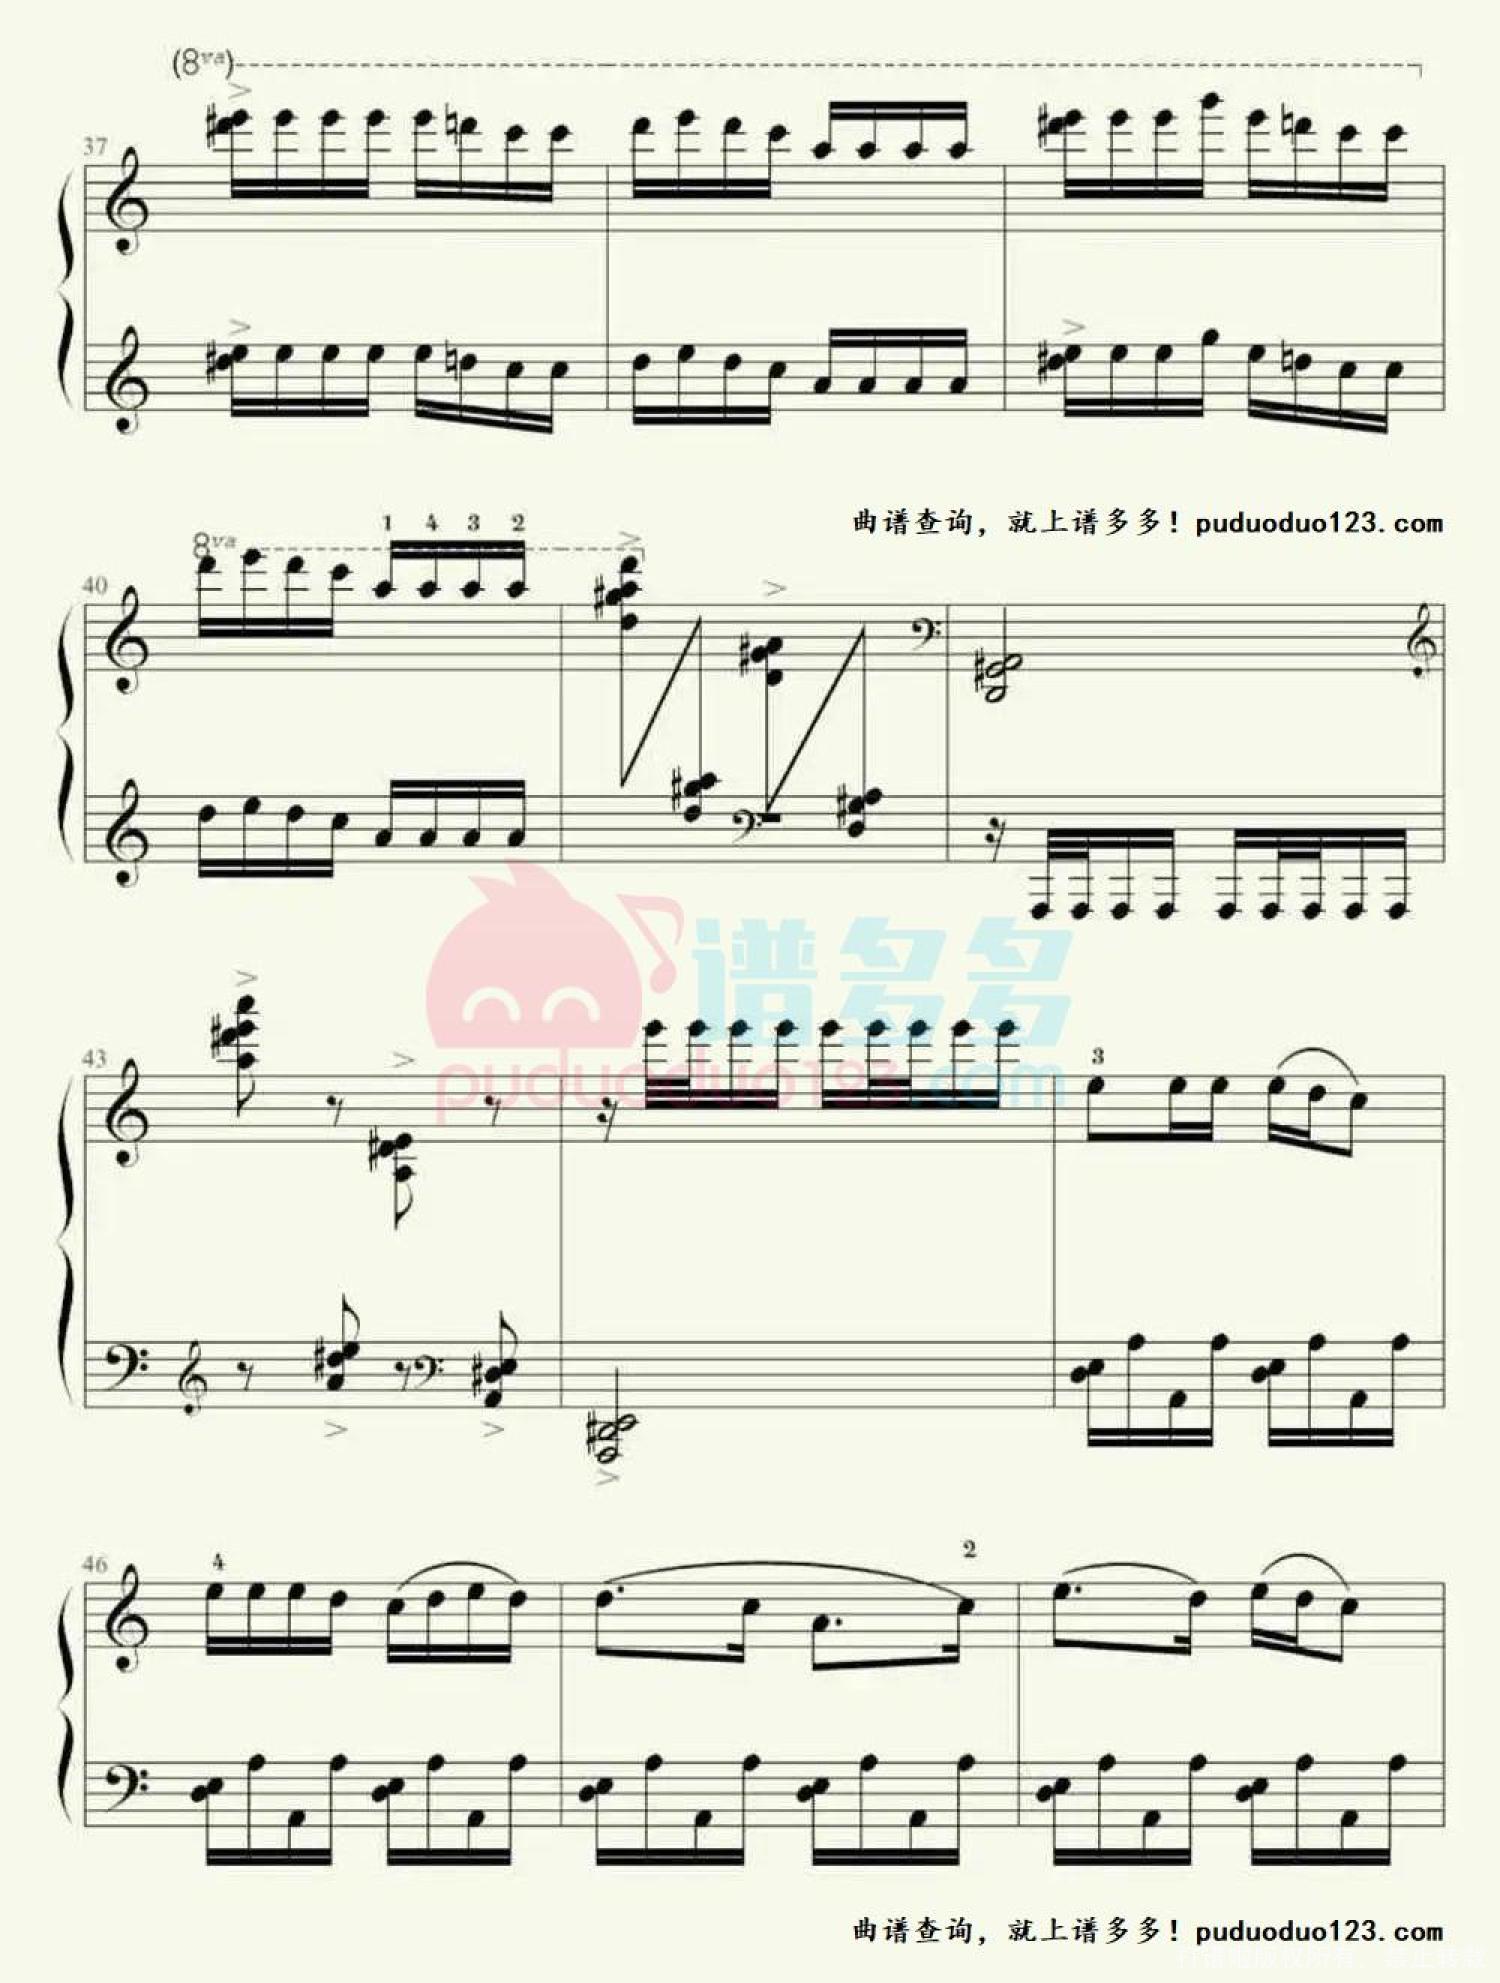 【8级-8-放马曲钢琴谱】_在线免费打印下载-爱弹琴乐谱网